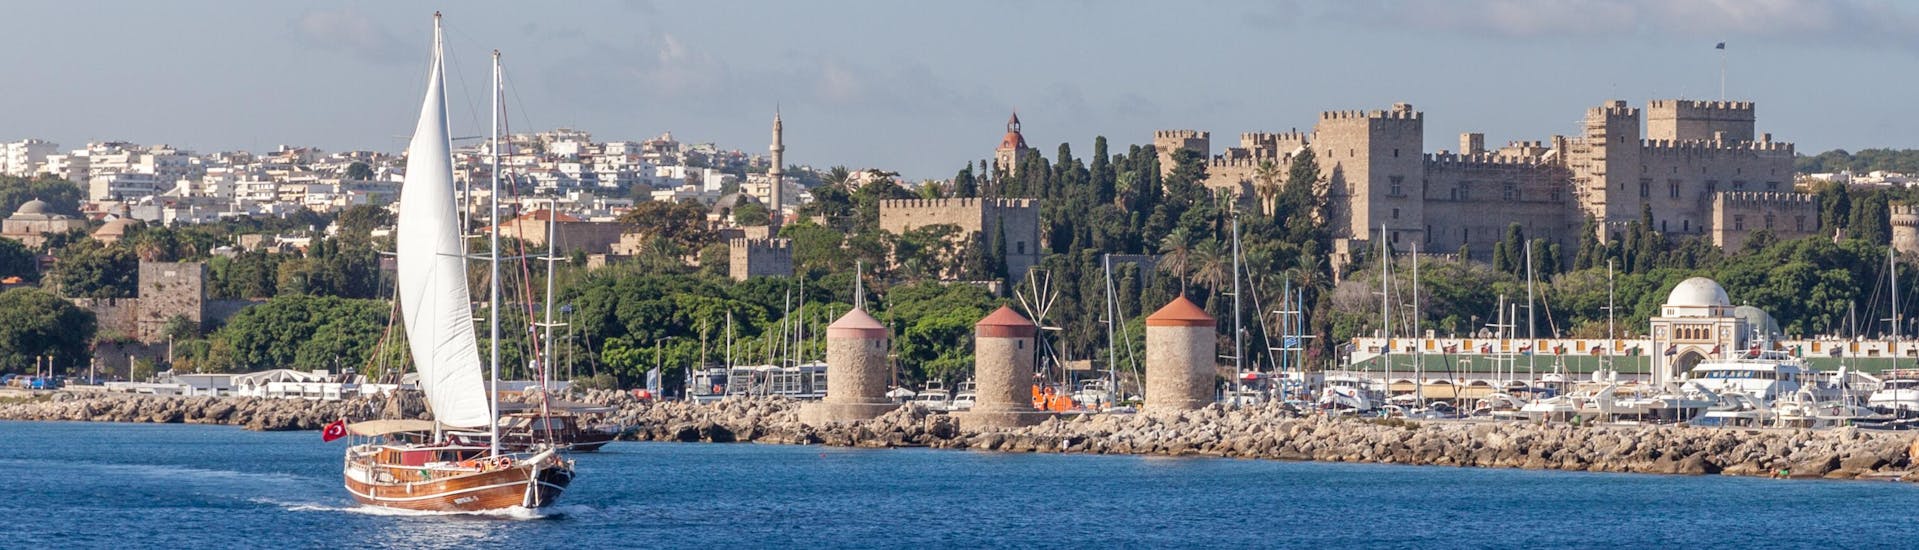 Plusieurs bateaux près du port de Mandraki avec la ville de Rhodes en arrière-plan.